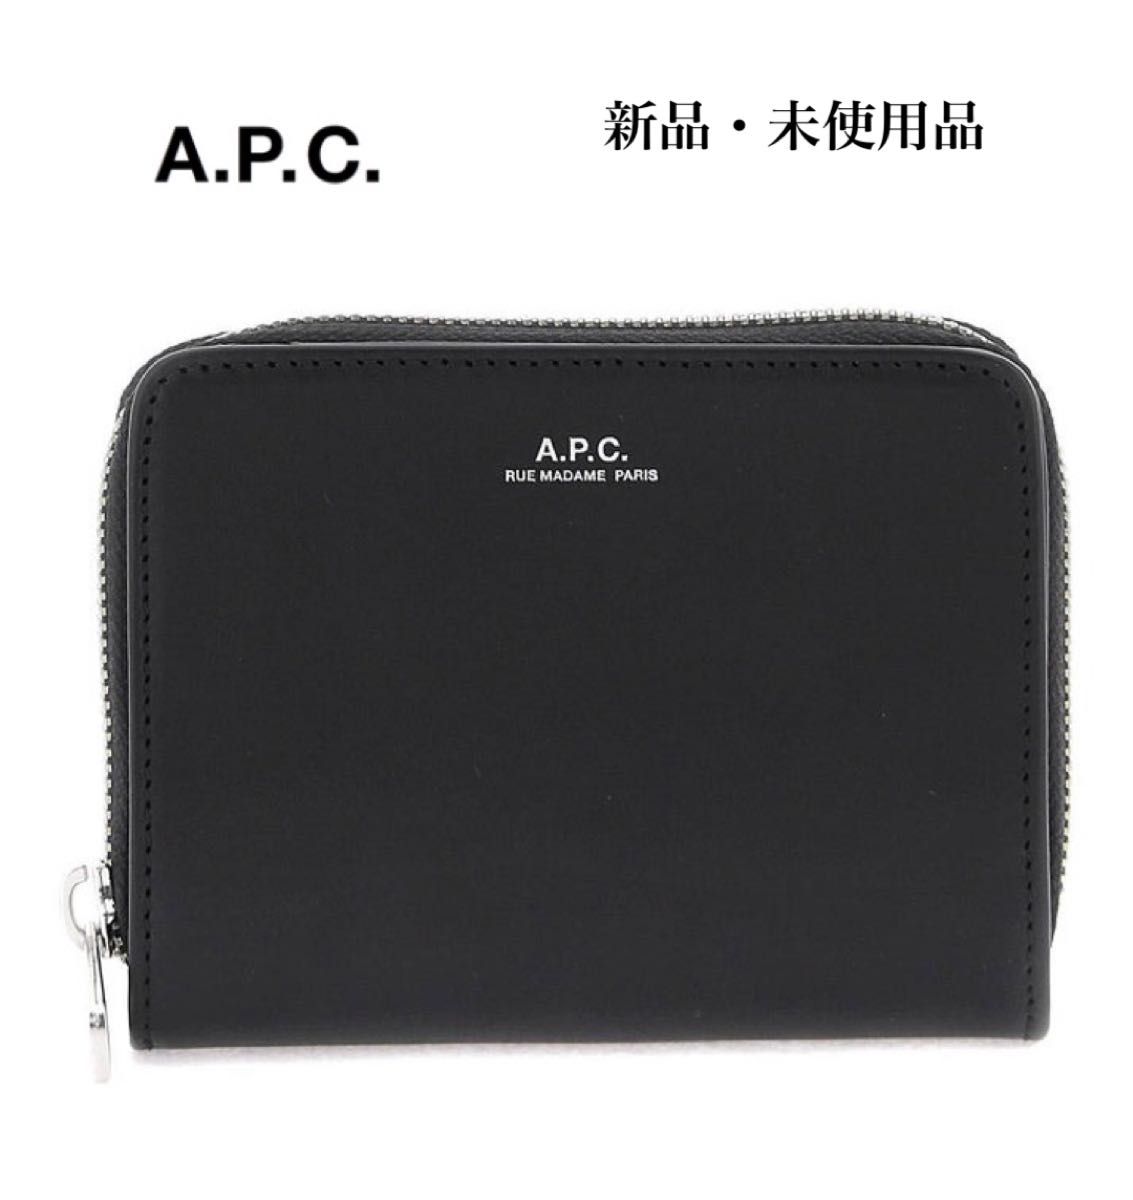 A.P.C. アーペーセー 二つ折り 財布 ラウンドジップ レディース WALLET 黒 ブラック PXAWV-H63087